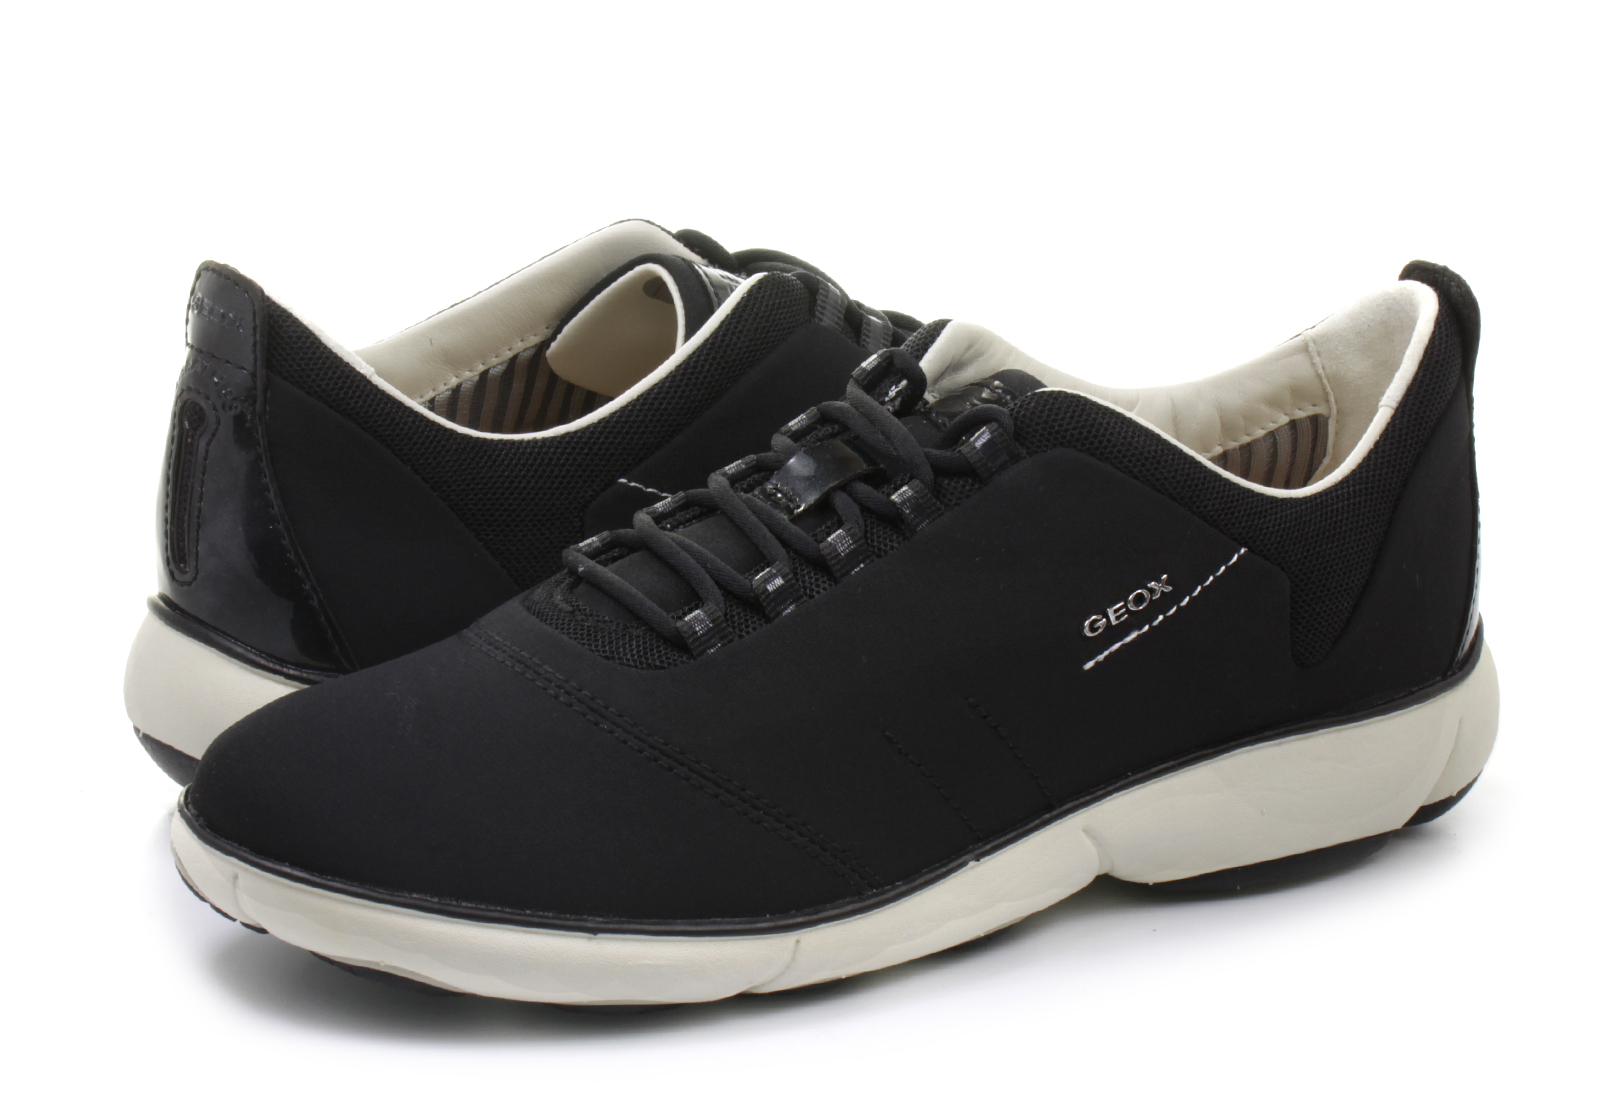 Geox - D Nebula - 1EA-0011-9999 Office Shoes